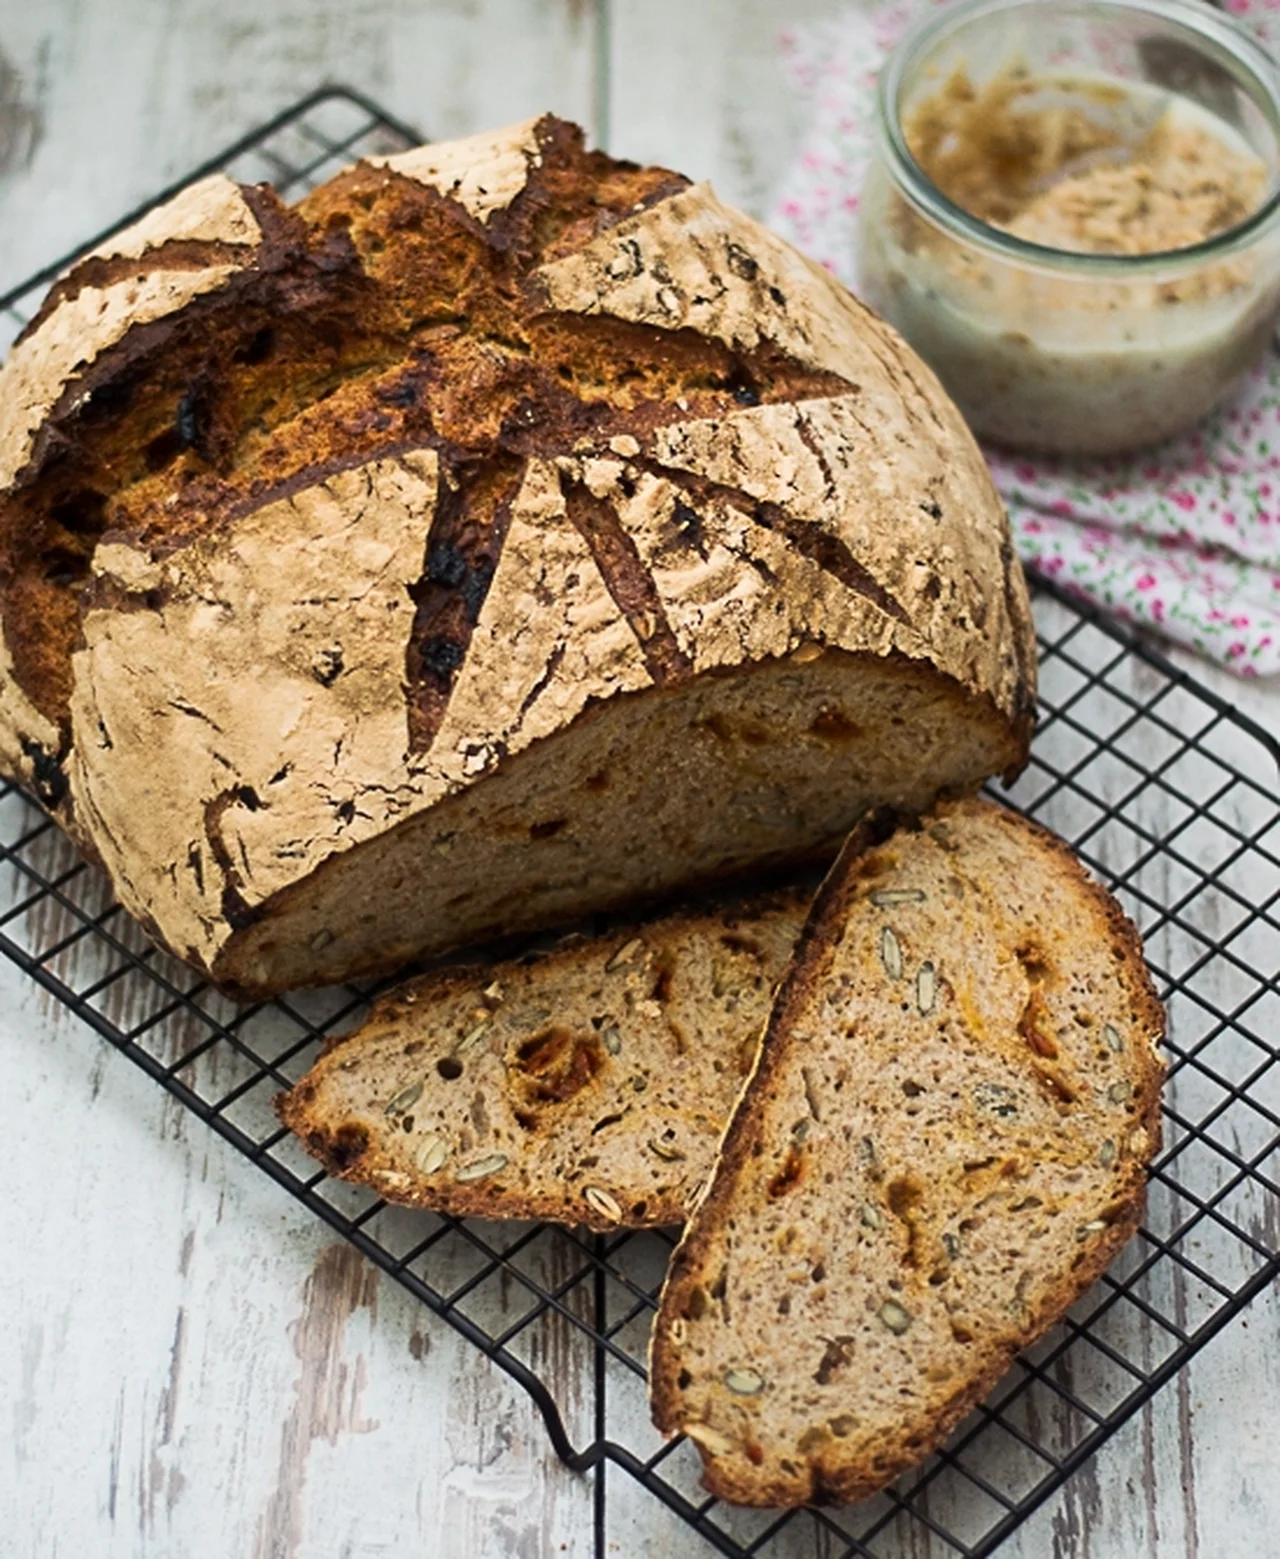 Chleb pszenno- żytni na zakwasie z superfoods